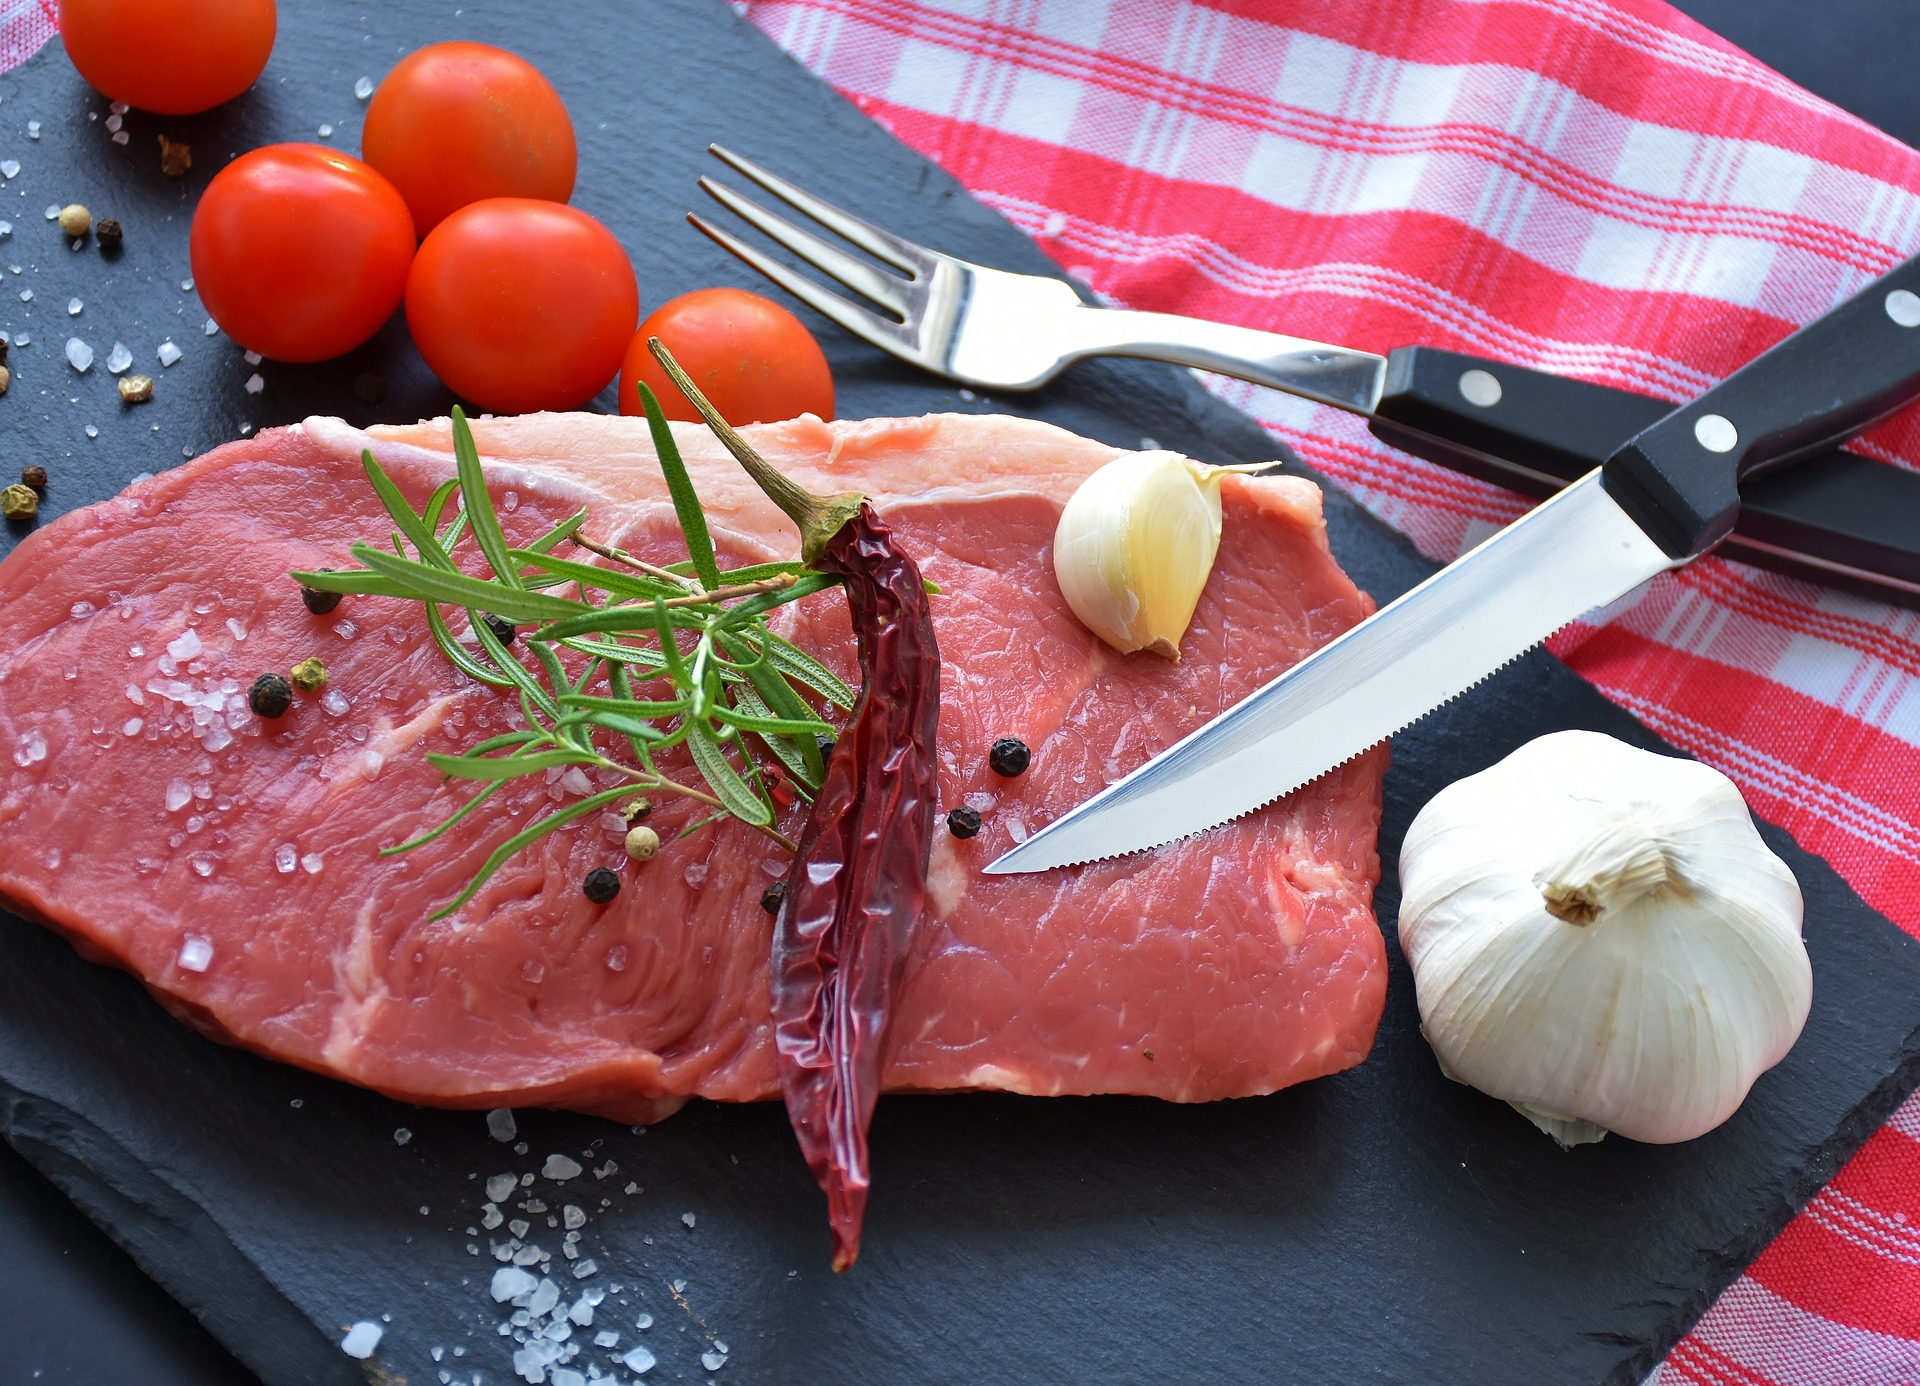 Dieta karniwora – zdrowie płynące z mięsa